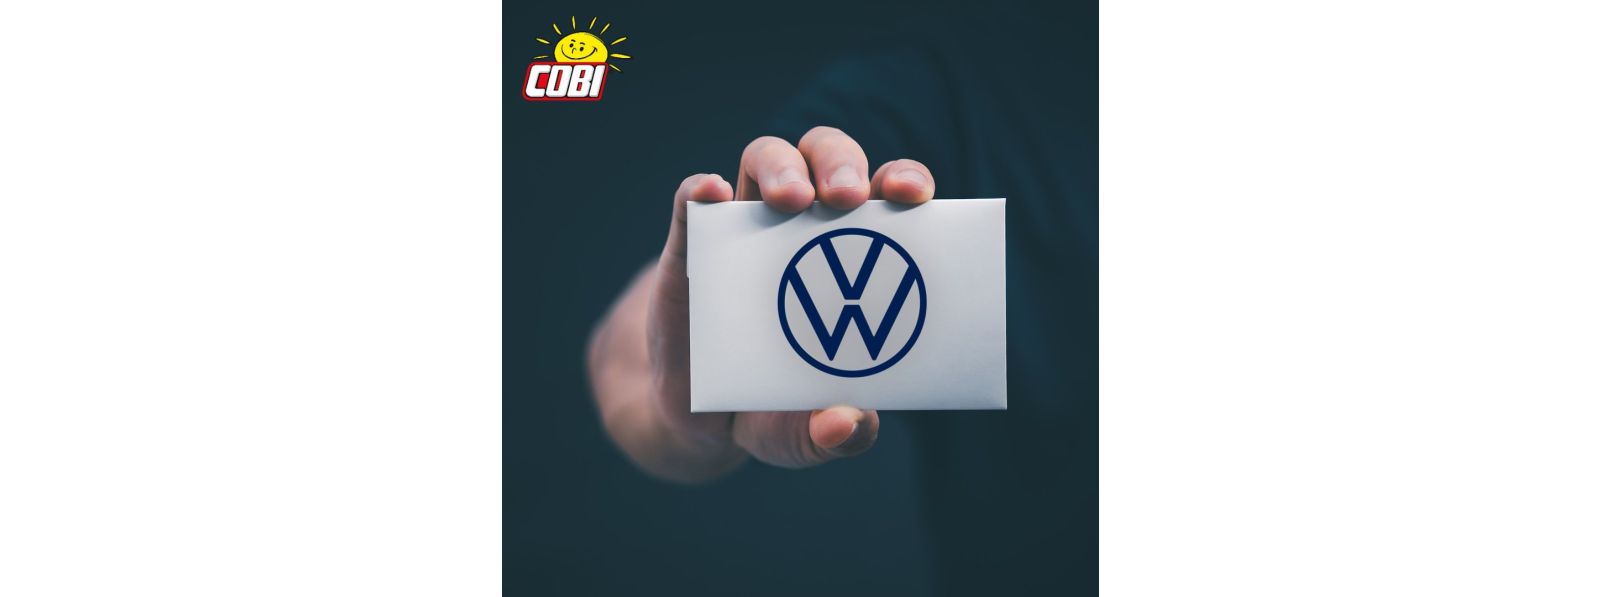  COBI schließt Lizenzvertrag mit Volkswagen: Neue COBI Modelle aus Klemmbausteinen demnächst auf dem europäischen Spielwaren-Mar